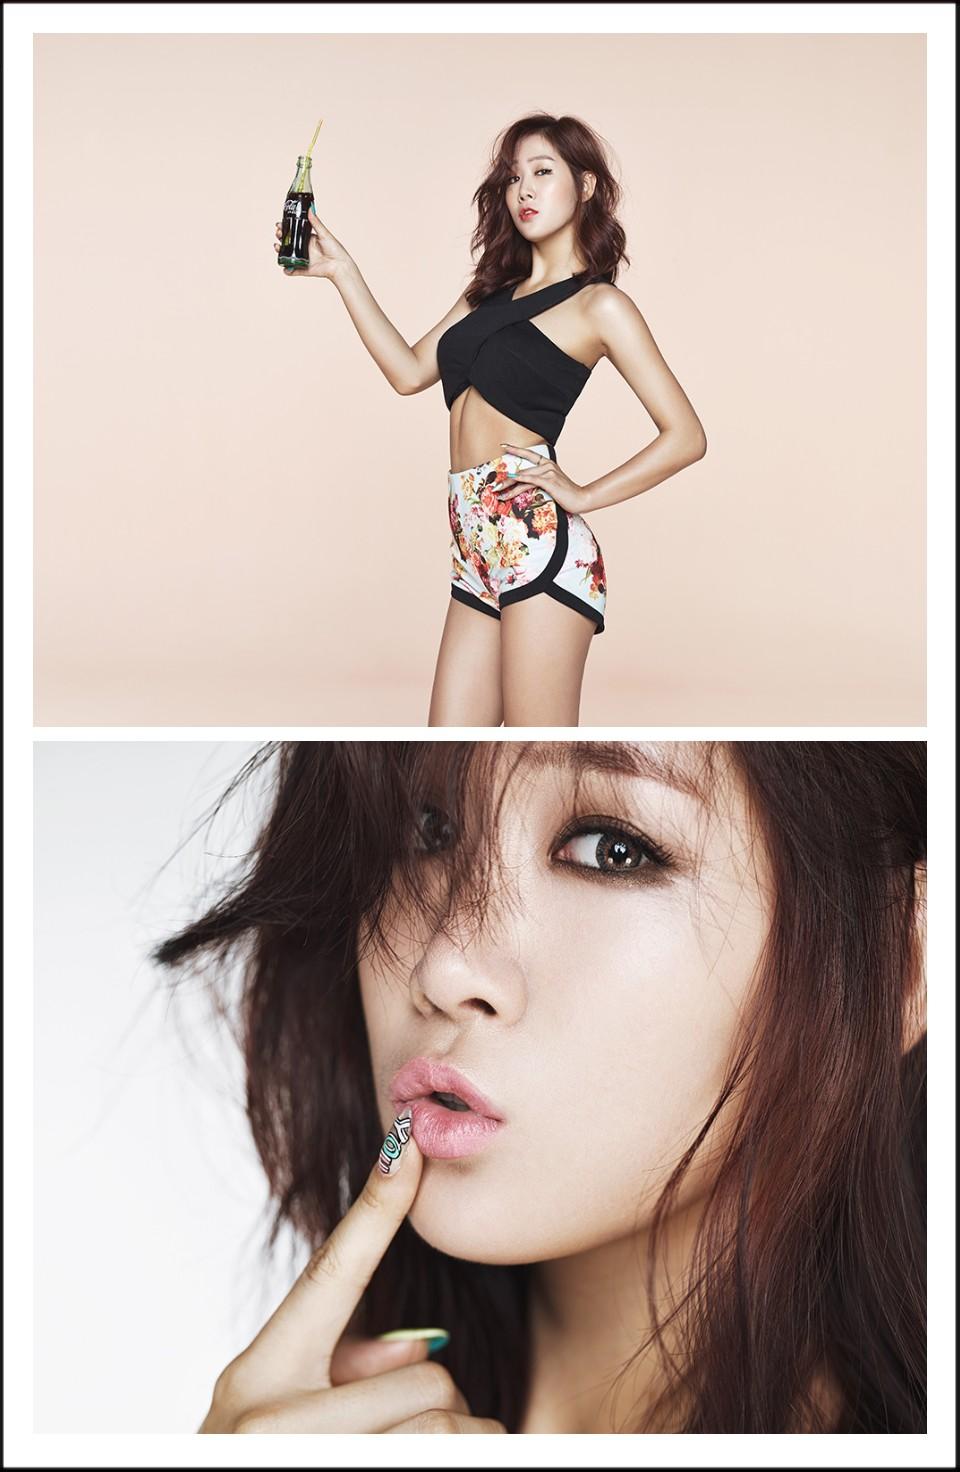 21일(월), 씨스타(Sistar) 두 번째 미니 앨범 'TOUCH&MOVE (타이틀곡:TOUCH MY BODY)' 발매 예정 | 인스티즈